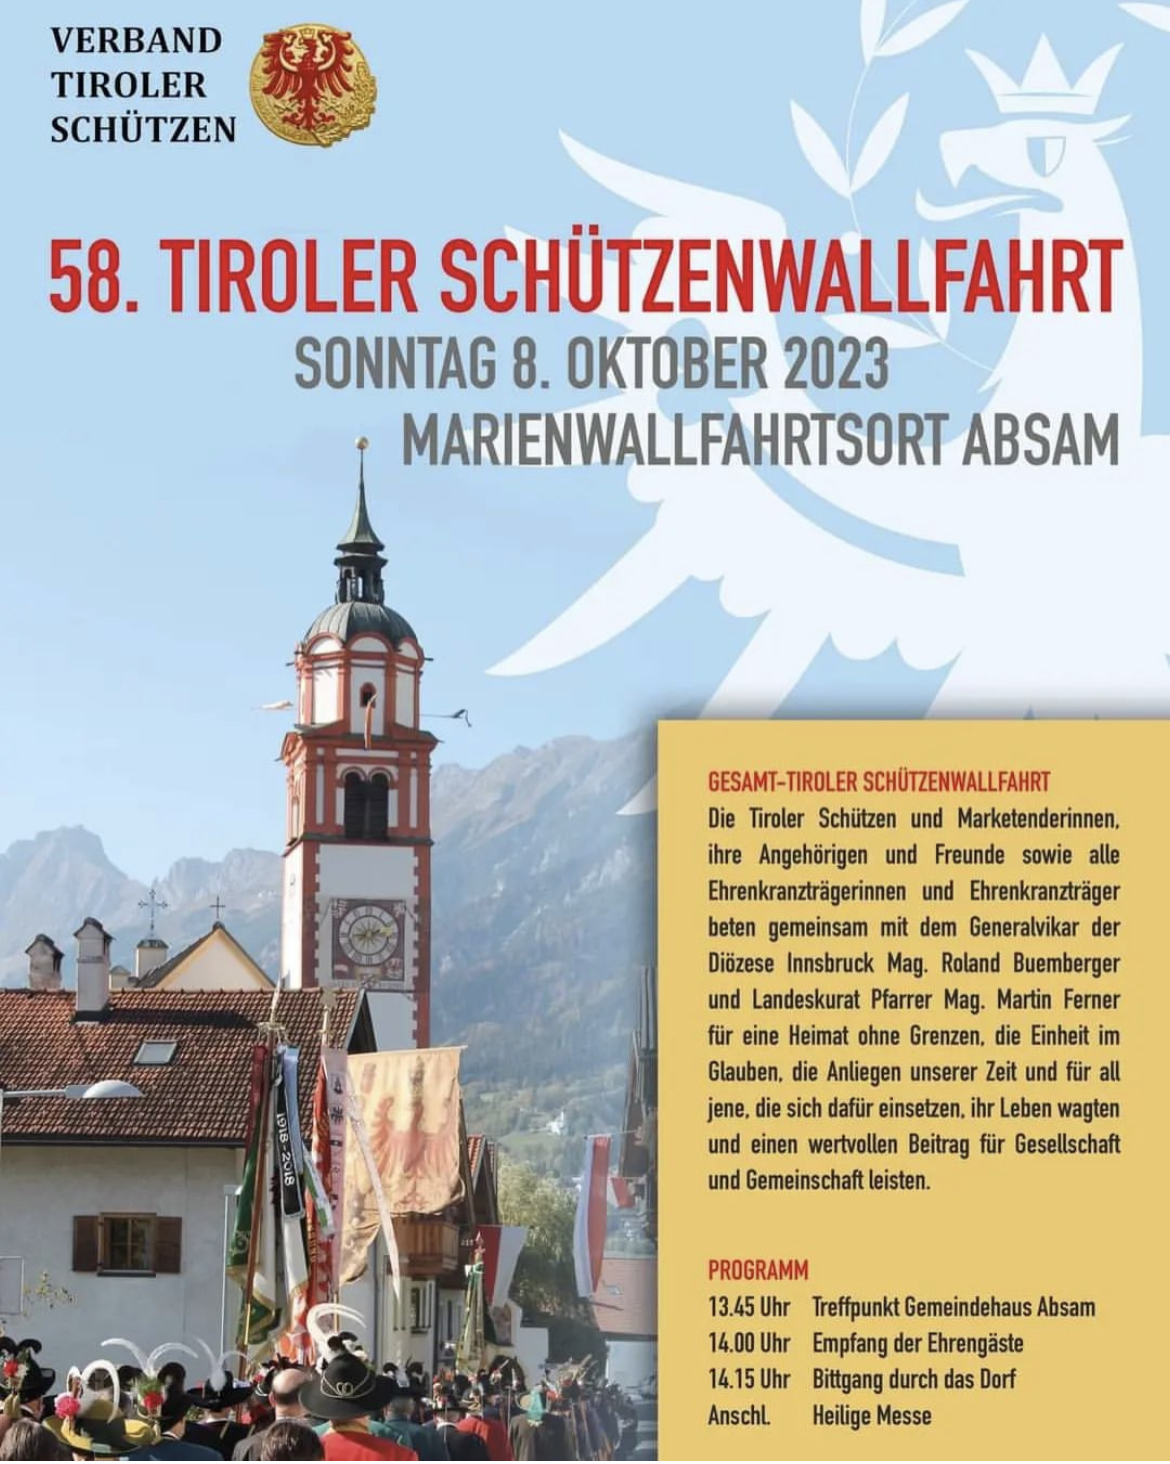 58. Tiroler Schützenwallfahrt – Sonntag 8. Oktober 2023 in Absam